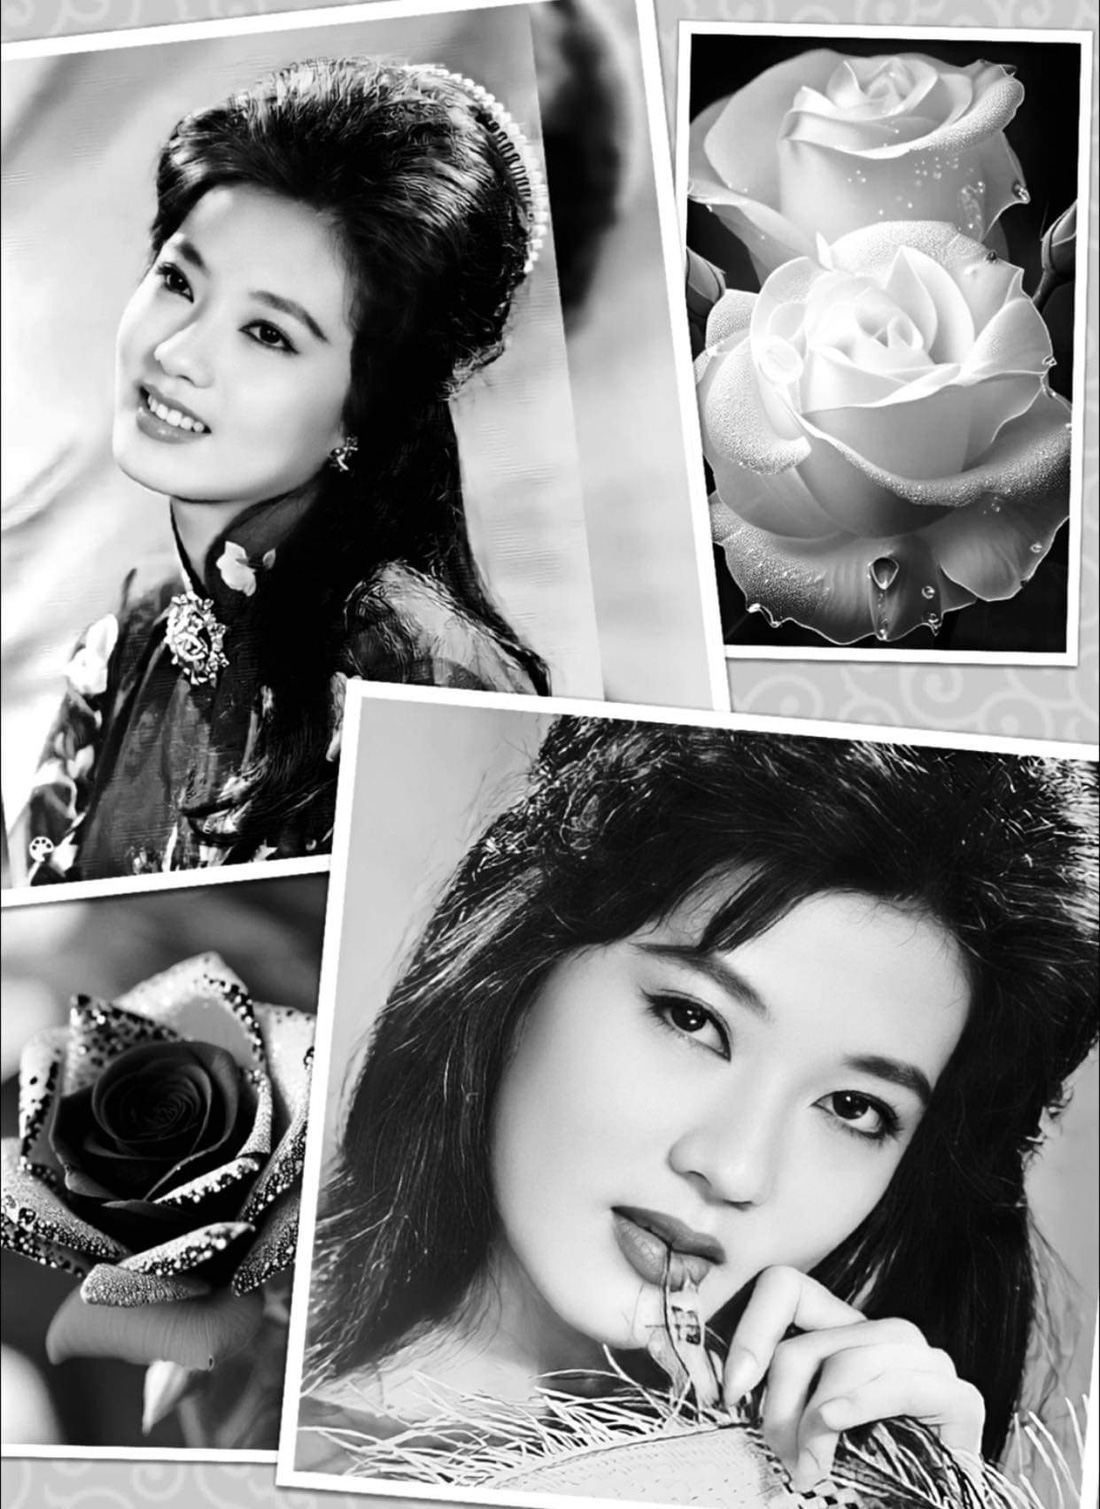 Hình ảnh &quot;Nữ hoàng sân khấu&quot; Thanh Nga quá đẹp bên những nụ hồng được Hữu Châu, Hà Linh đăng trên trang cá nhân lại khiến bao trái tim khán giả yêu mến bà thổn thức